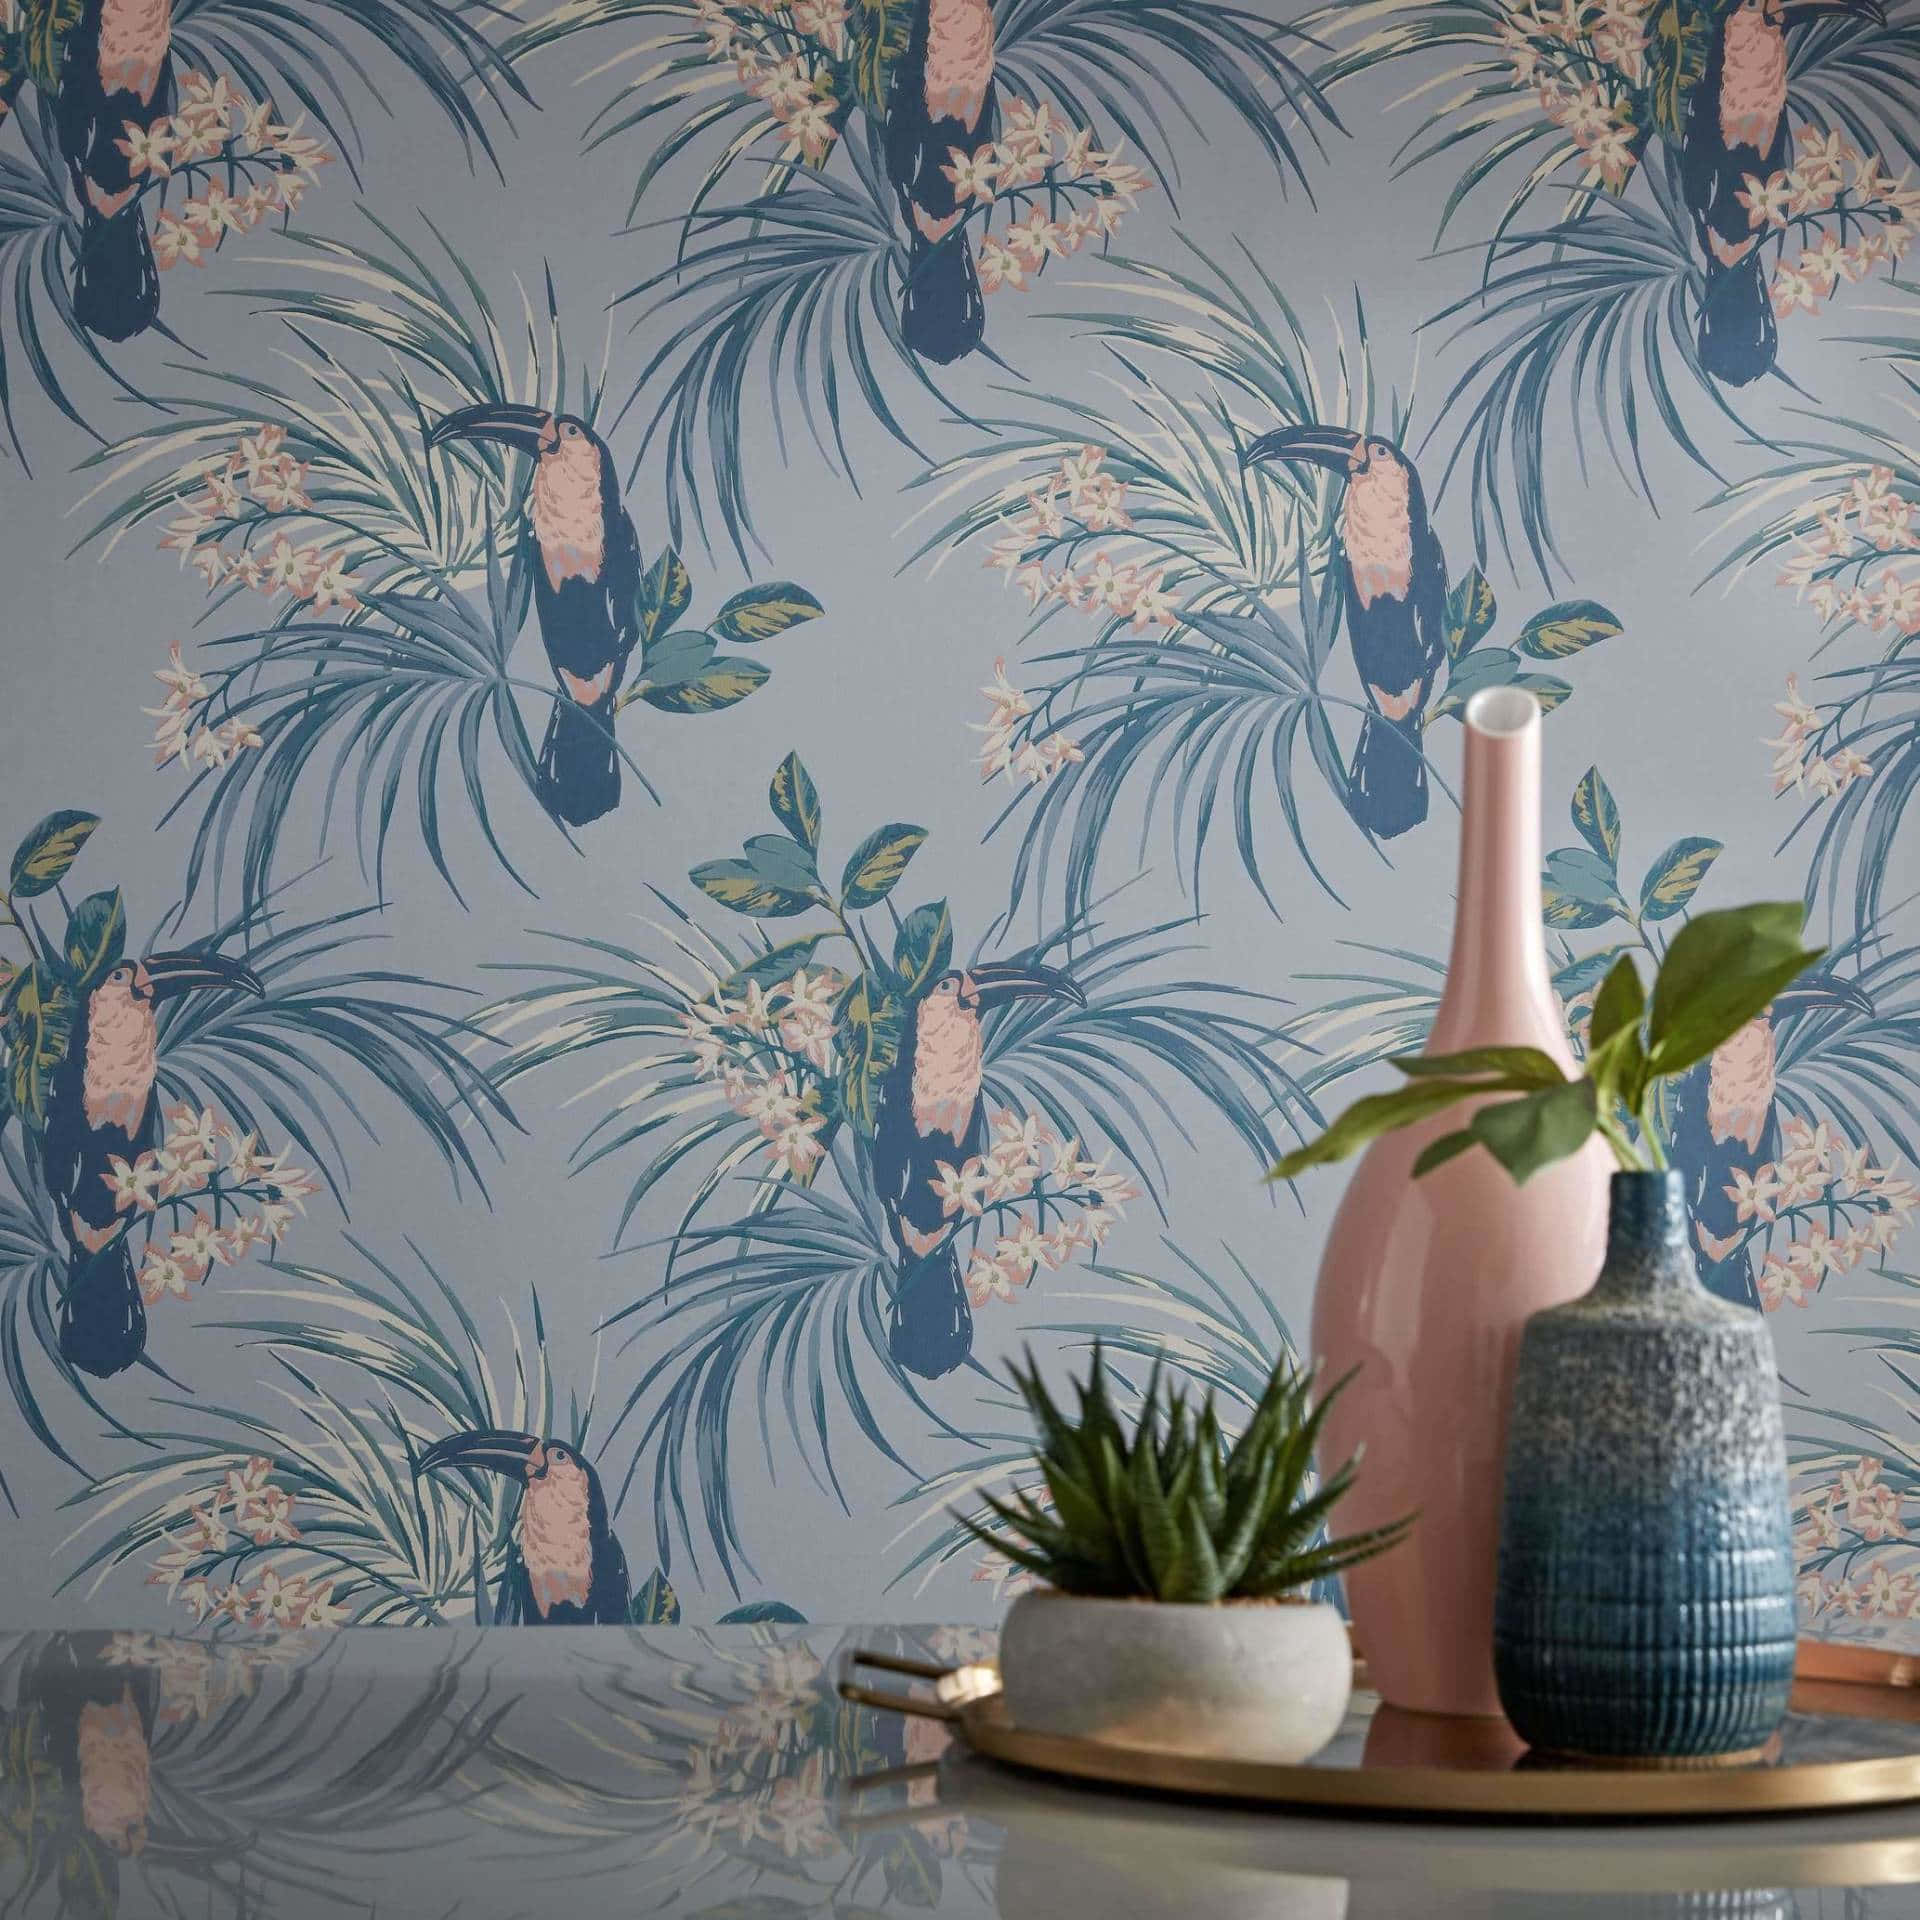 Tropical Toucan Wallpaper Interior